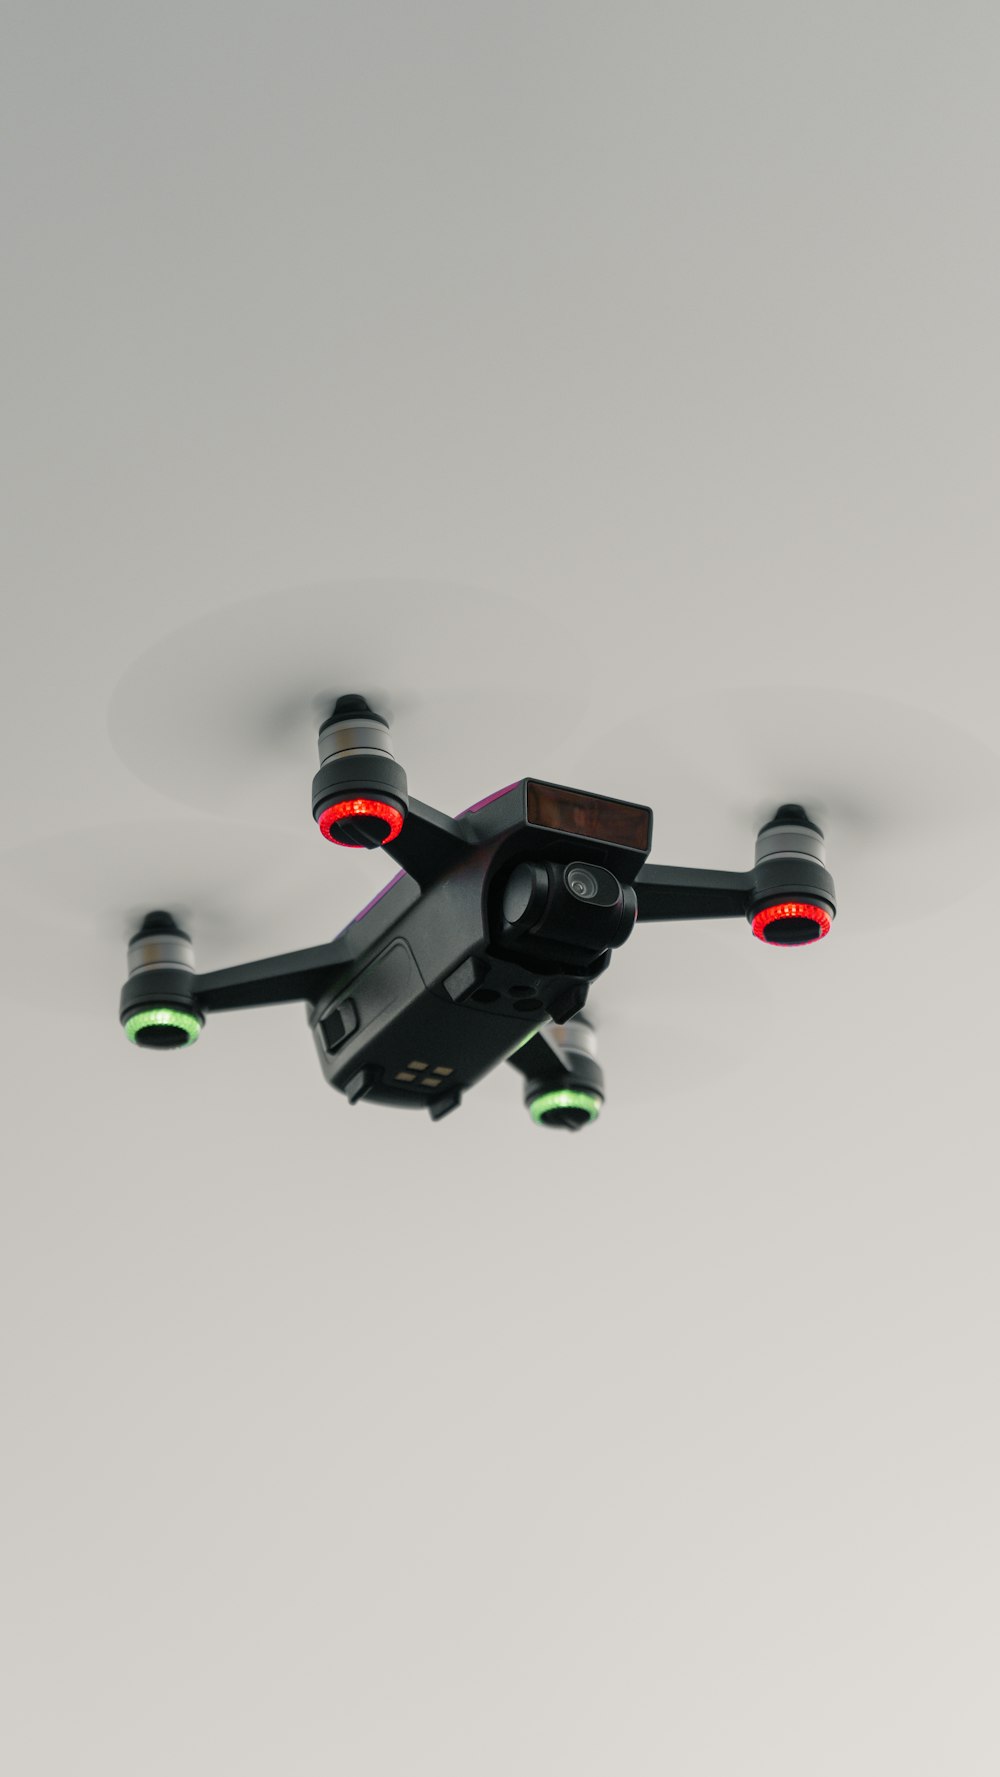 dron negro y gris con fondo blanco